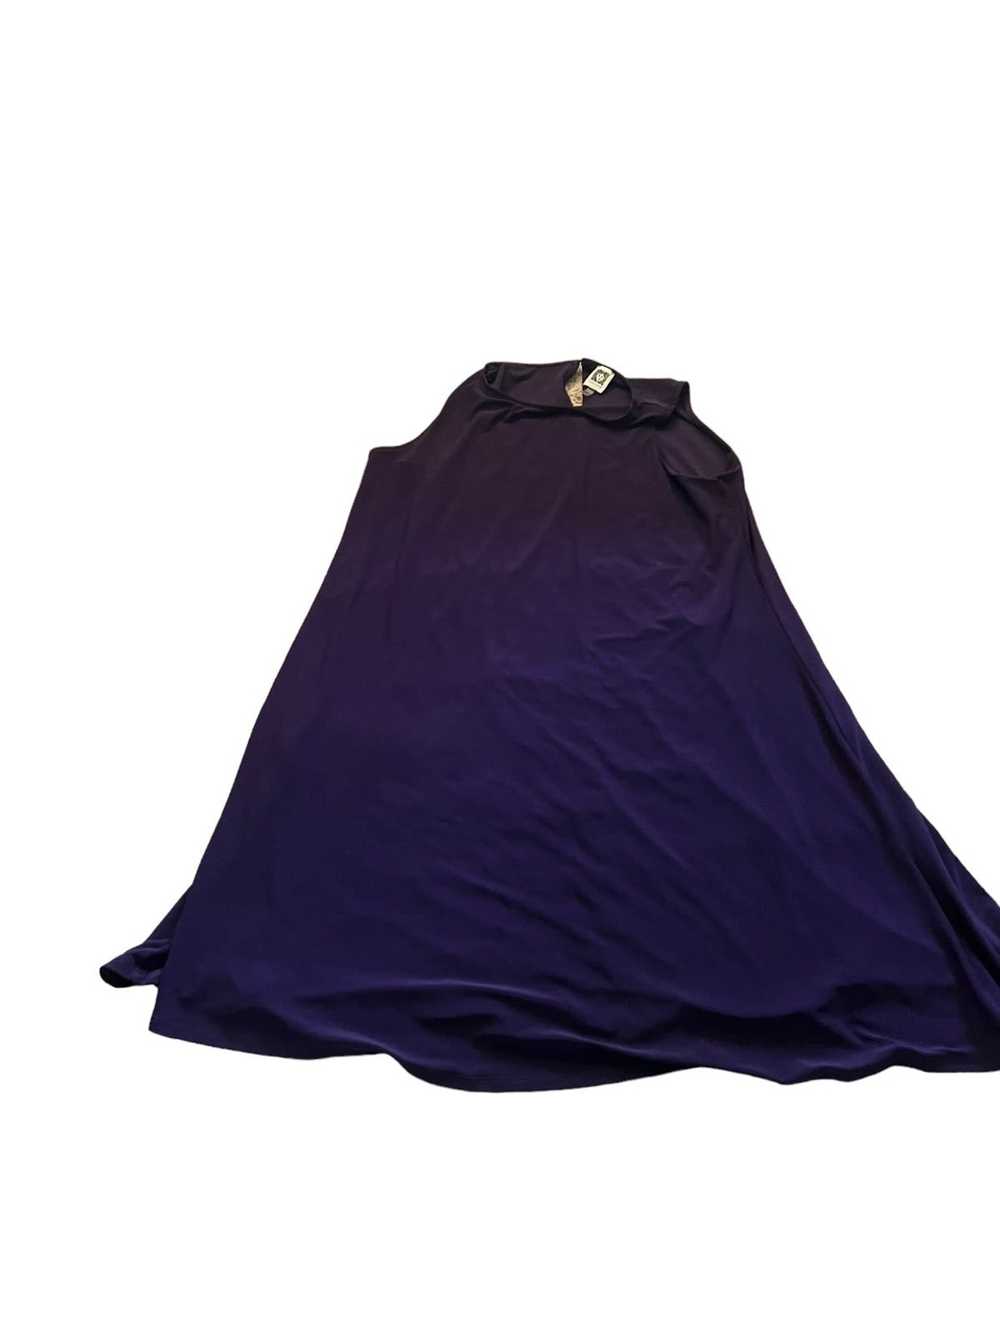 Anne Klein Anne Klein Purple Dress Womens 14 D11 - image 2